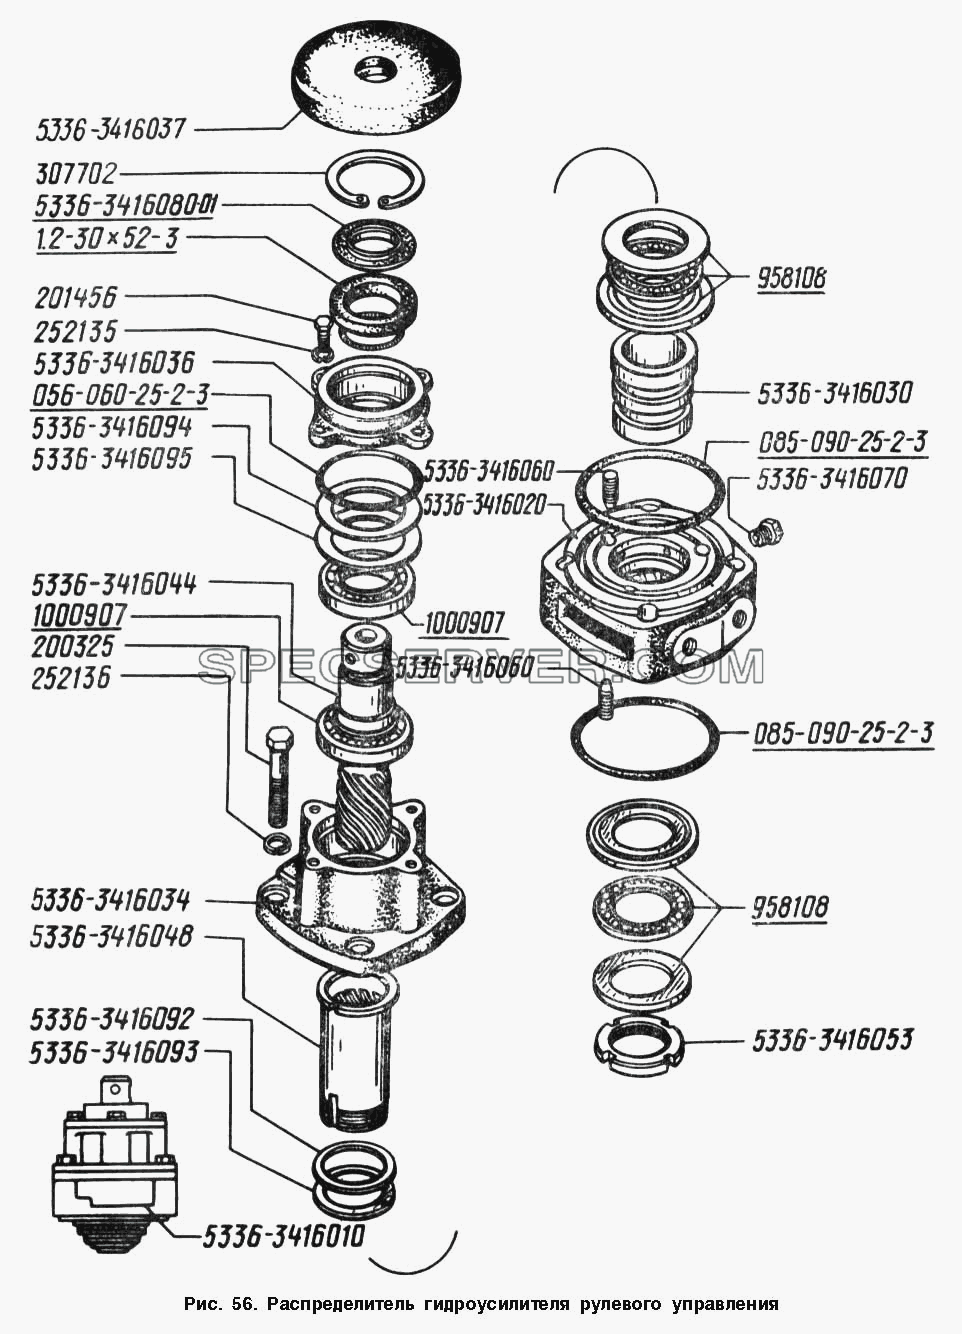 Распределитель гидроусилителя рулевого управления для МАЗ-54328 (список запасных частей)